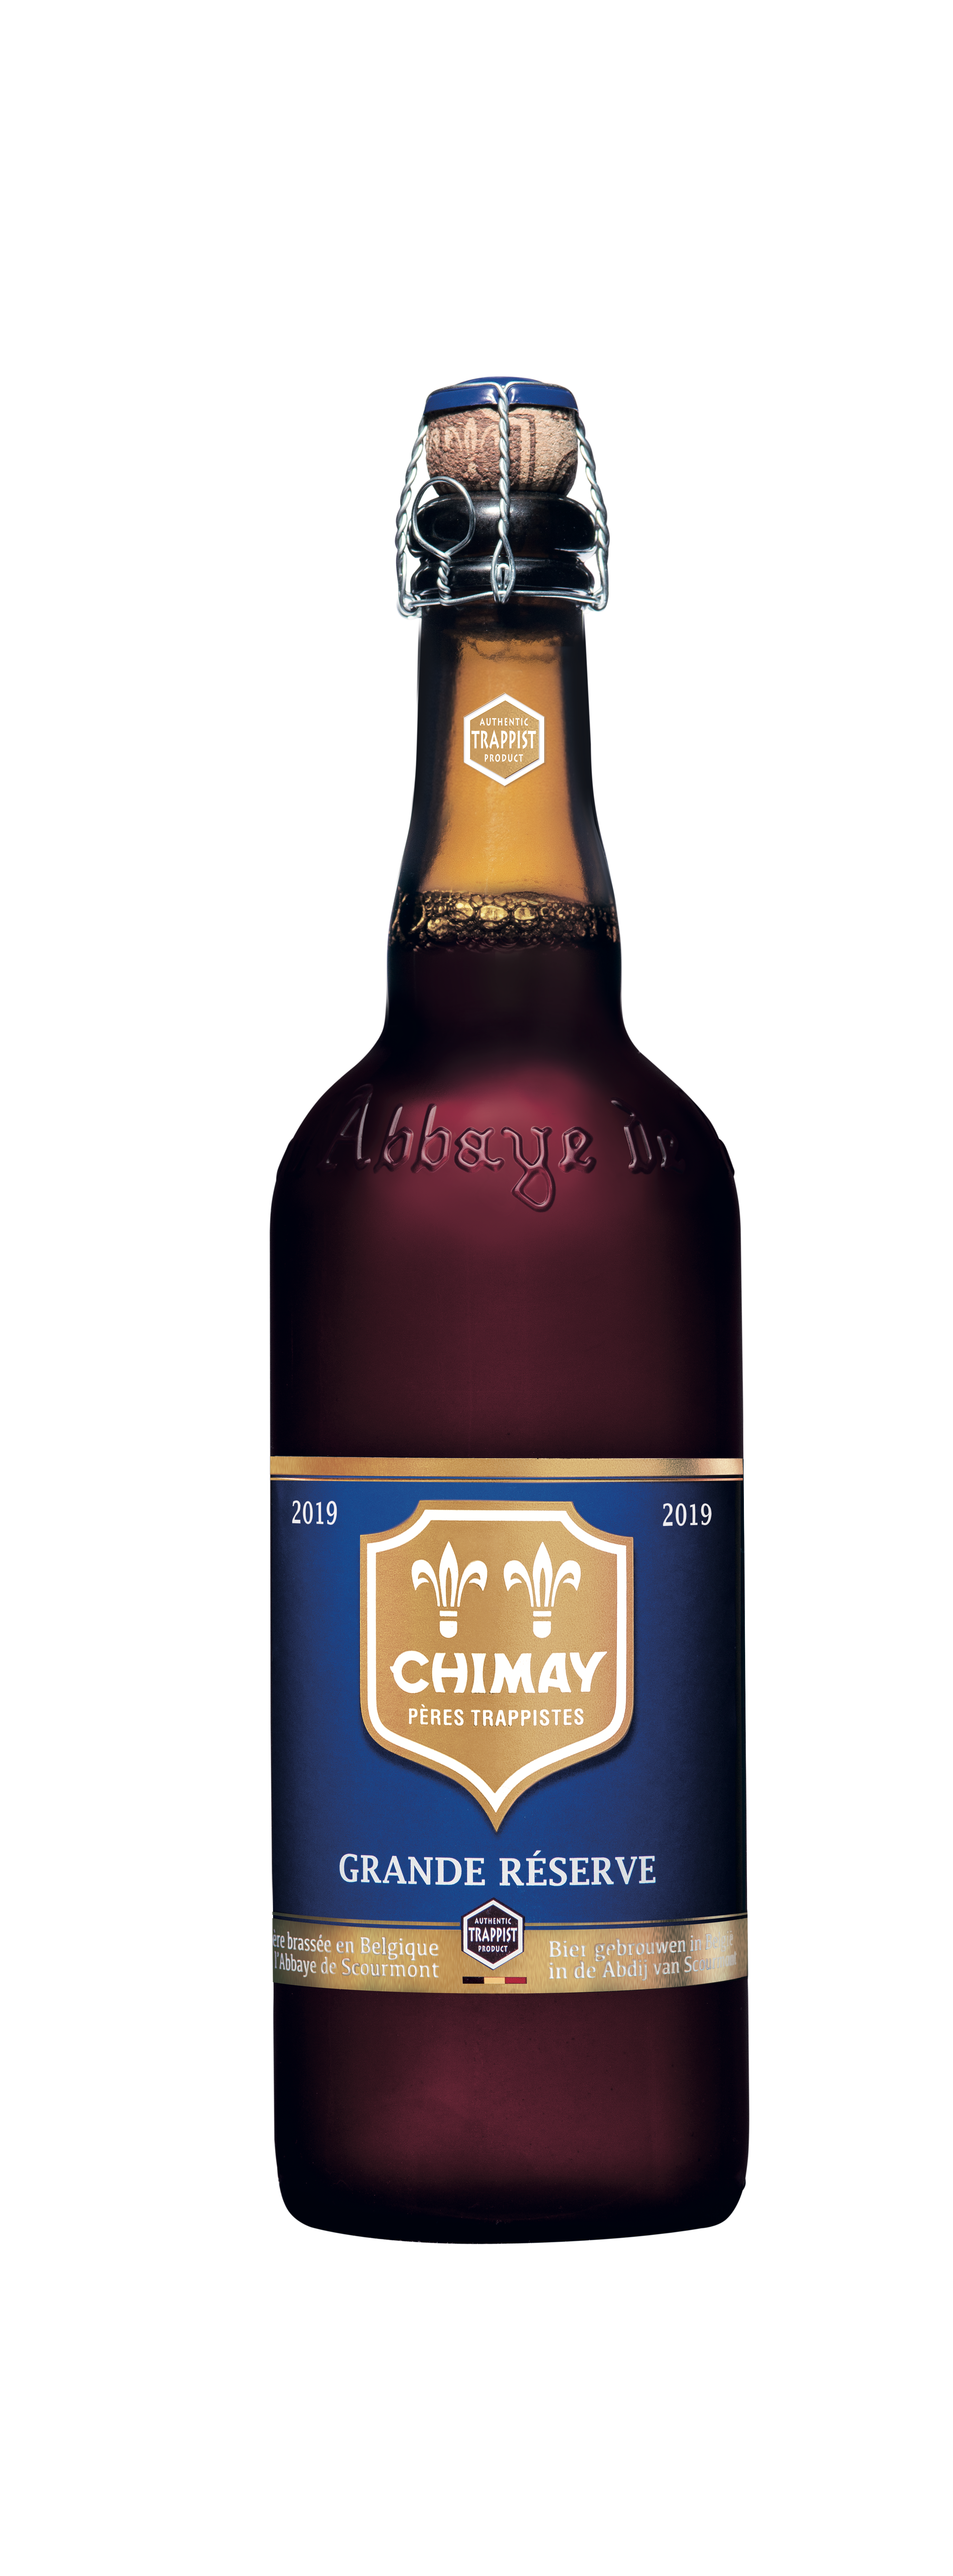 Chimay - Bière d'abbaye pères trappistes grande réserve  (750 ml)